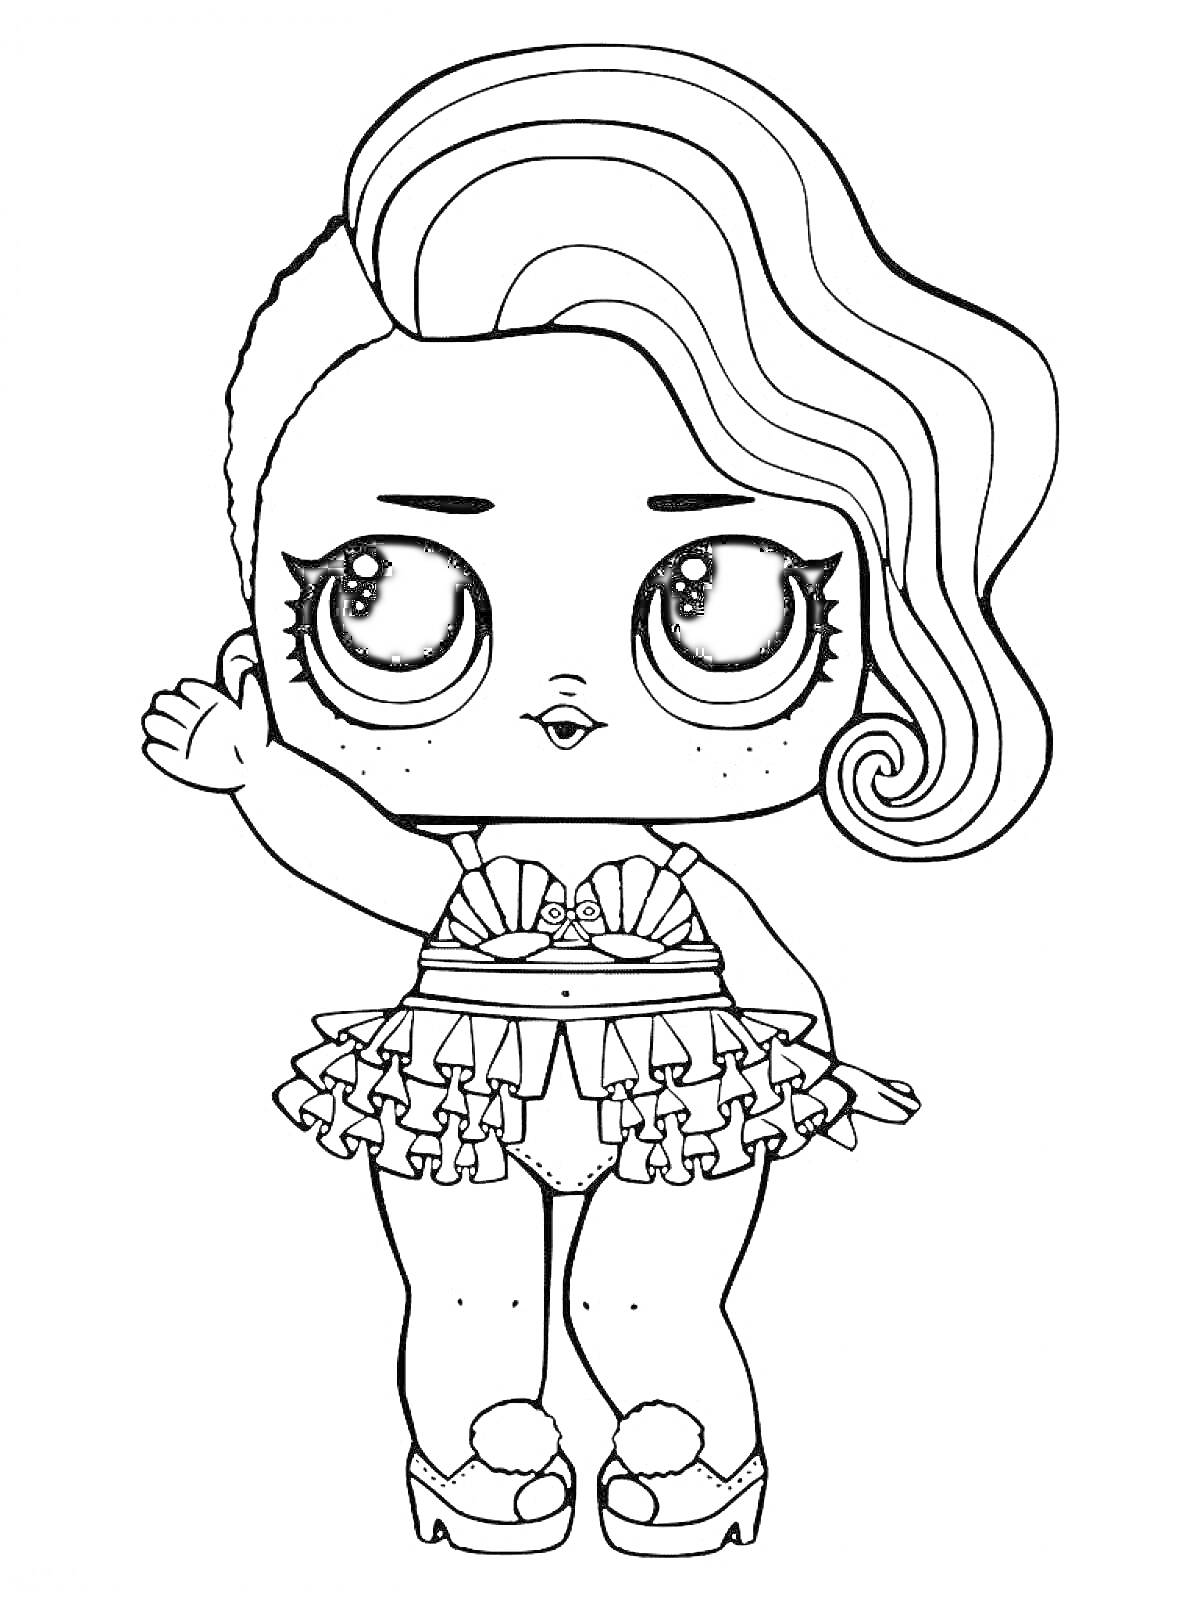 Девочка ЛОЛ с волнистыми волосами и рюками, в юбке и туфлях с бантиками, с поднятой рукой и веснушками на лице